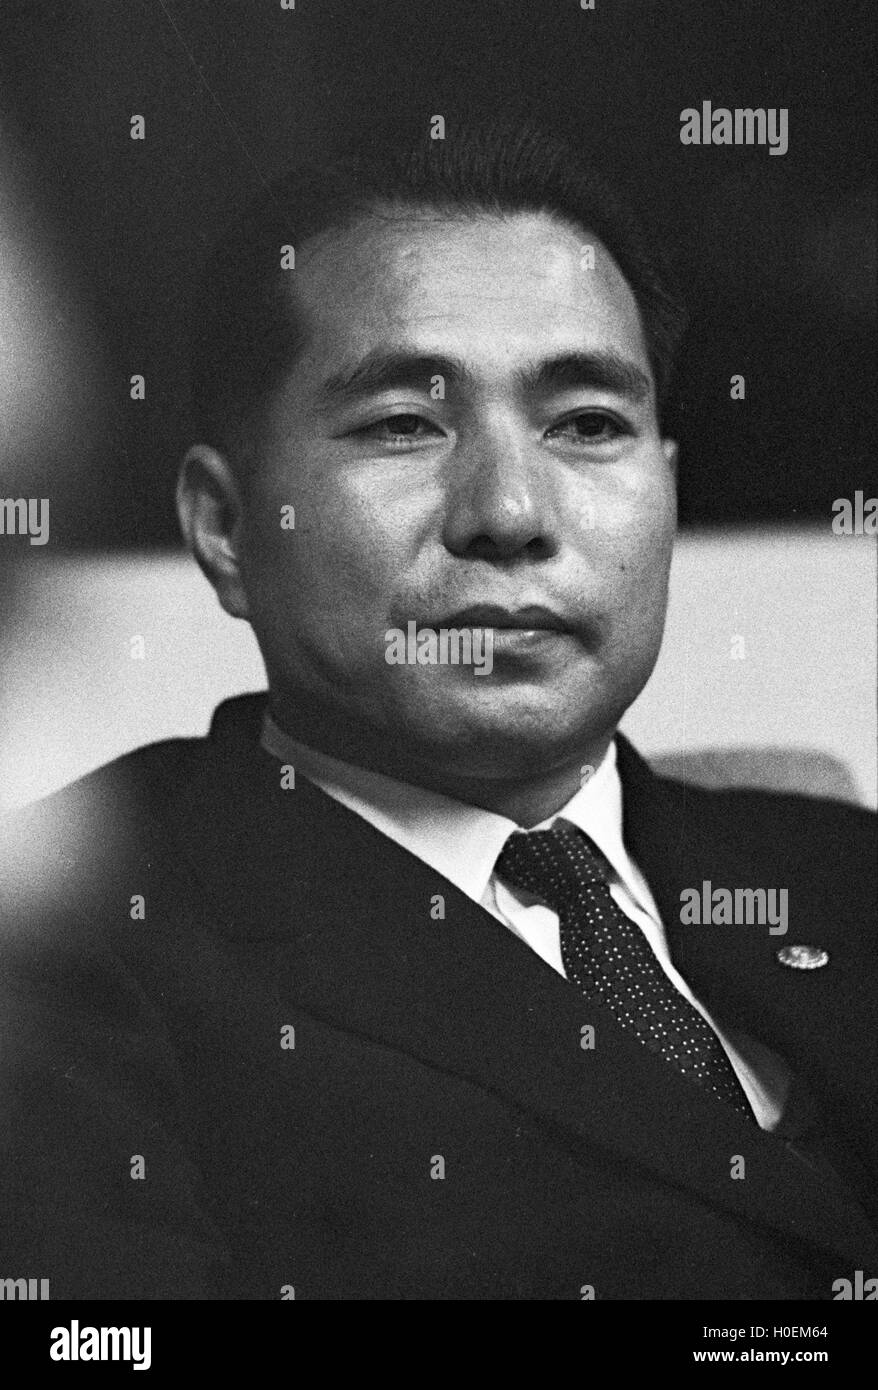 Daisaku Ikeda, former President of Soka Gakkai, the controversial new religious movement. This photograph was taken in July 1963 Stock Photo